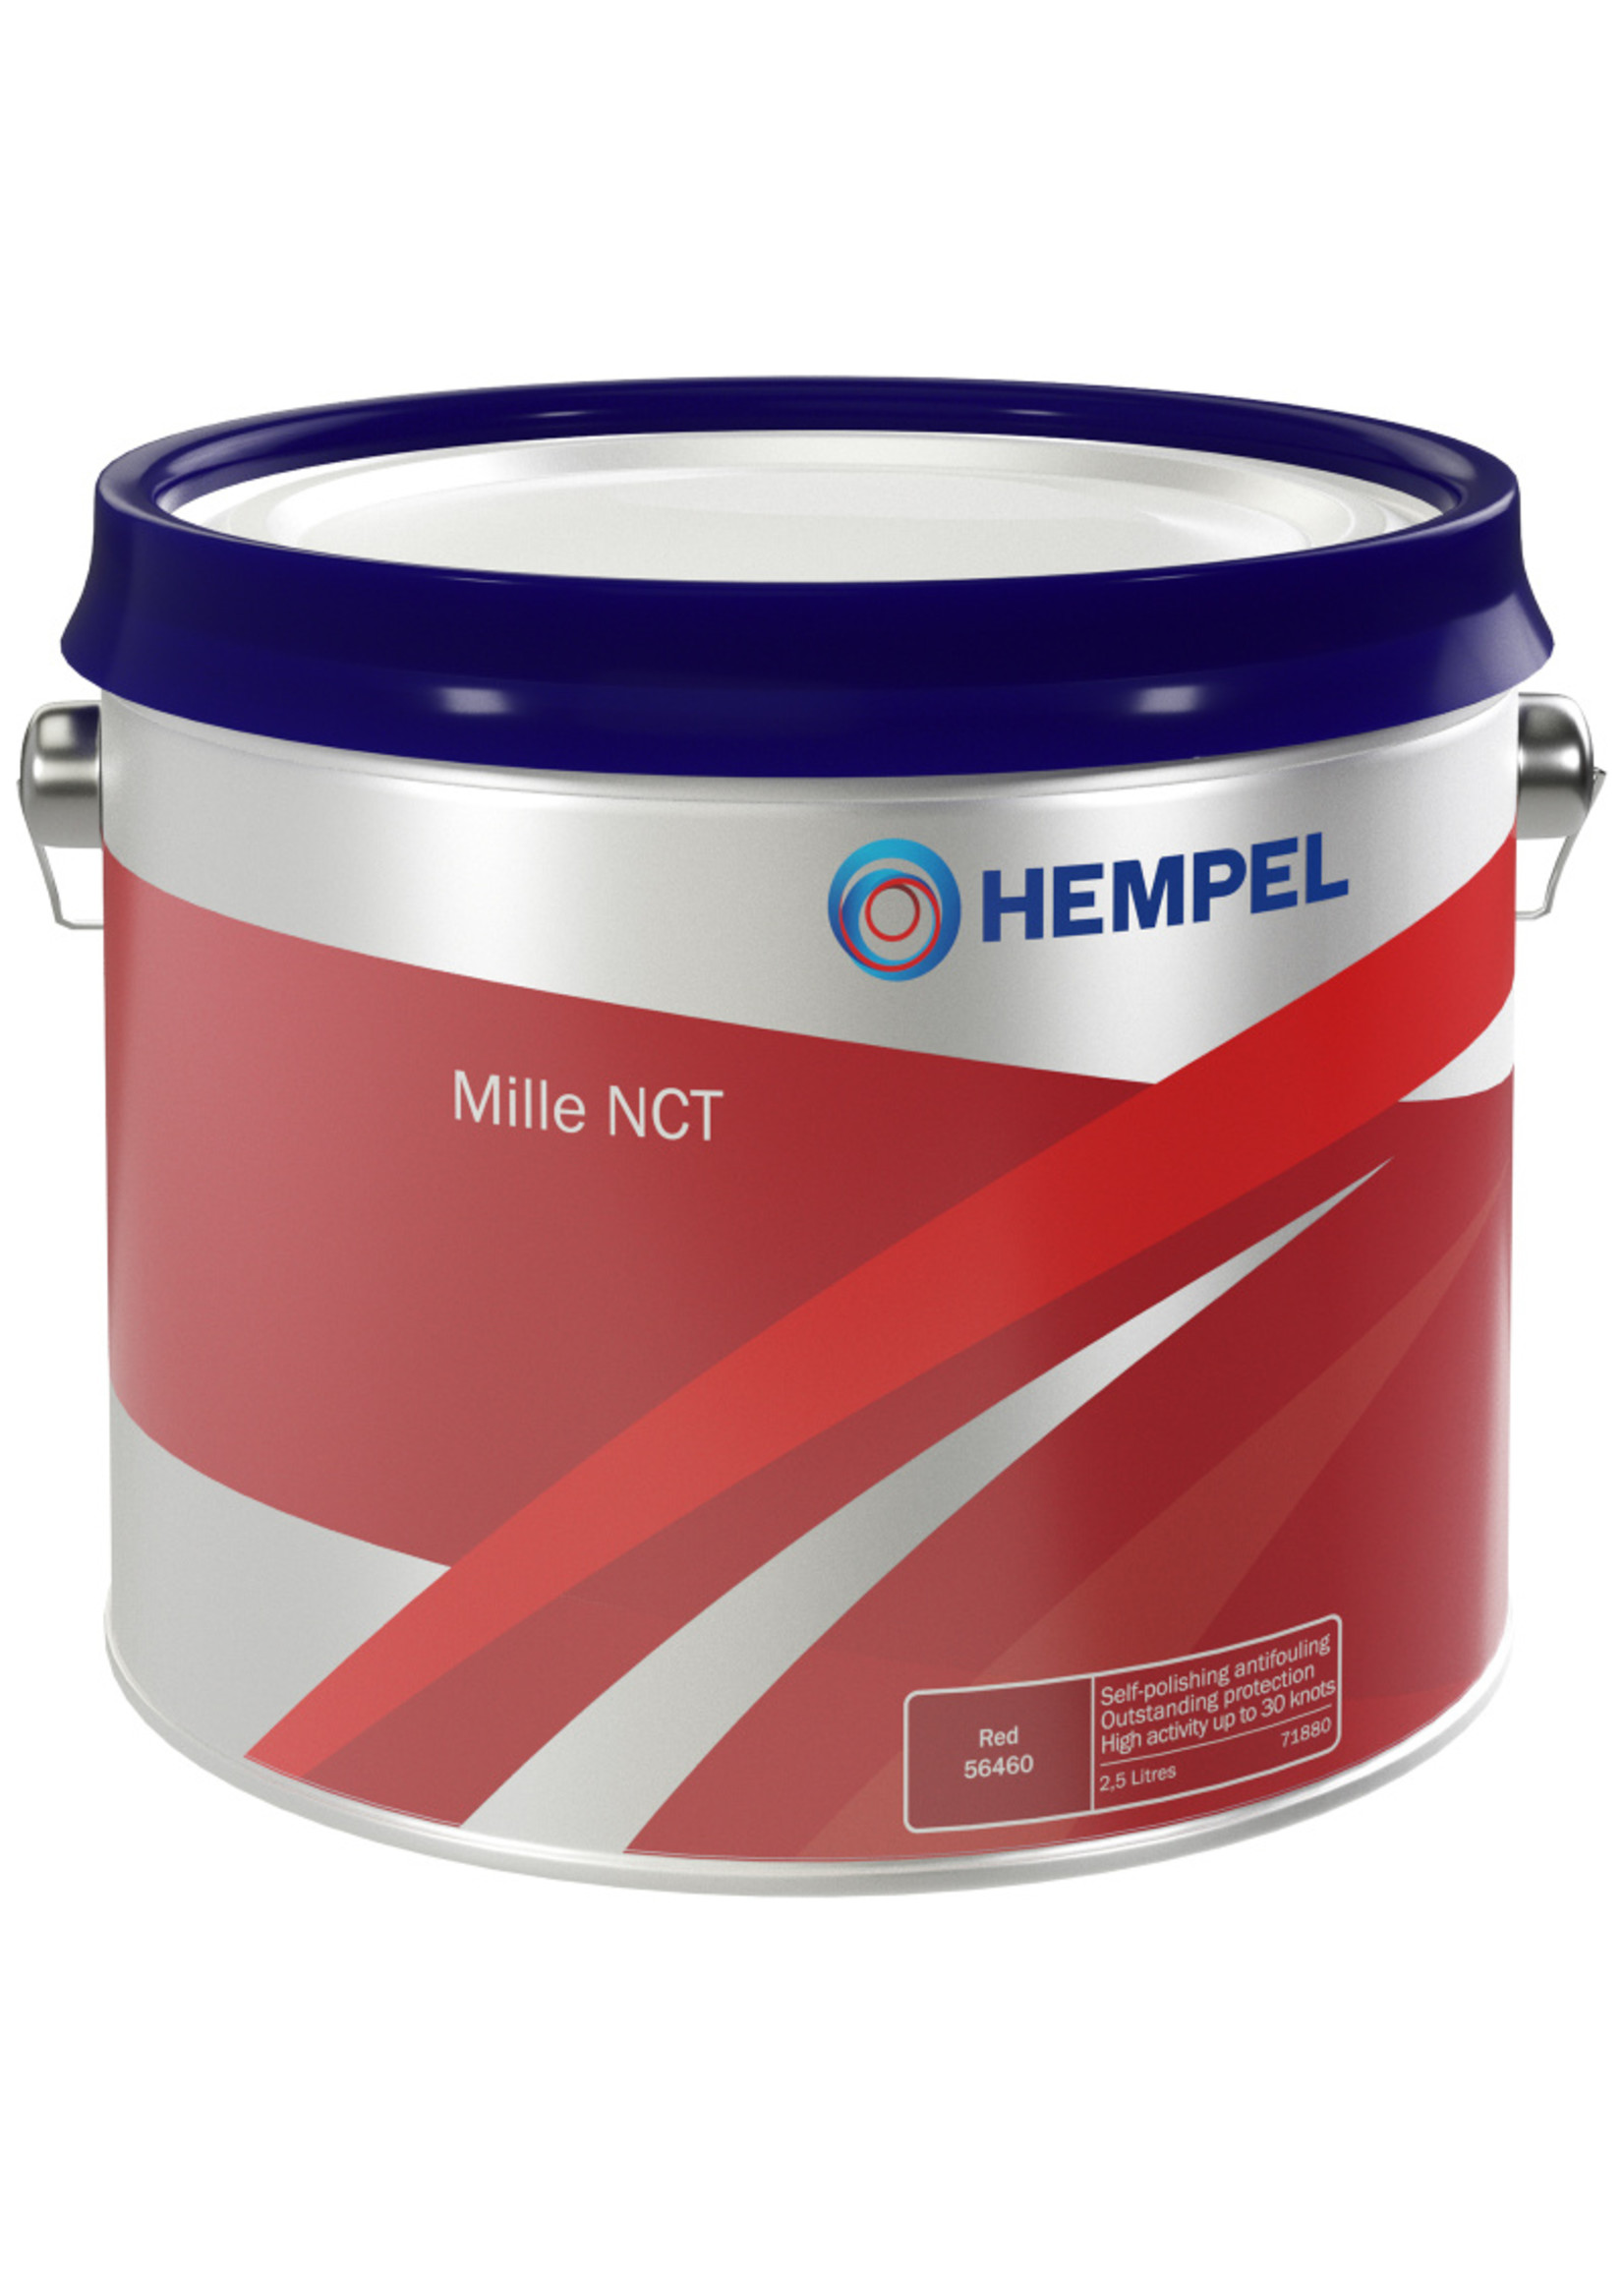 Hempel Mille NCT 7174 C White 10101 Blik 2,5 Liter